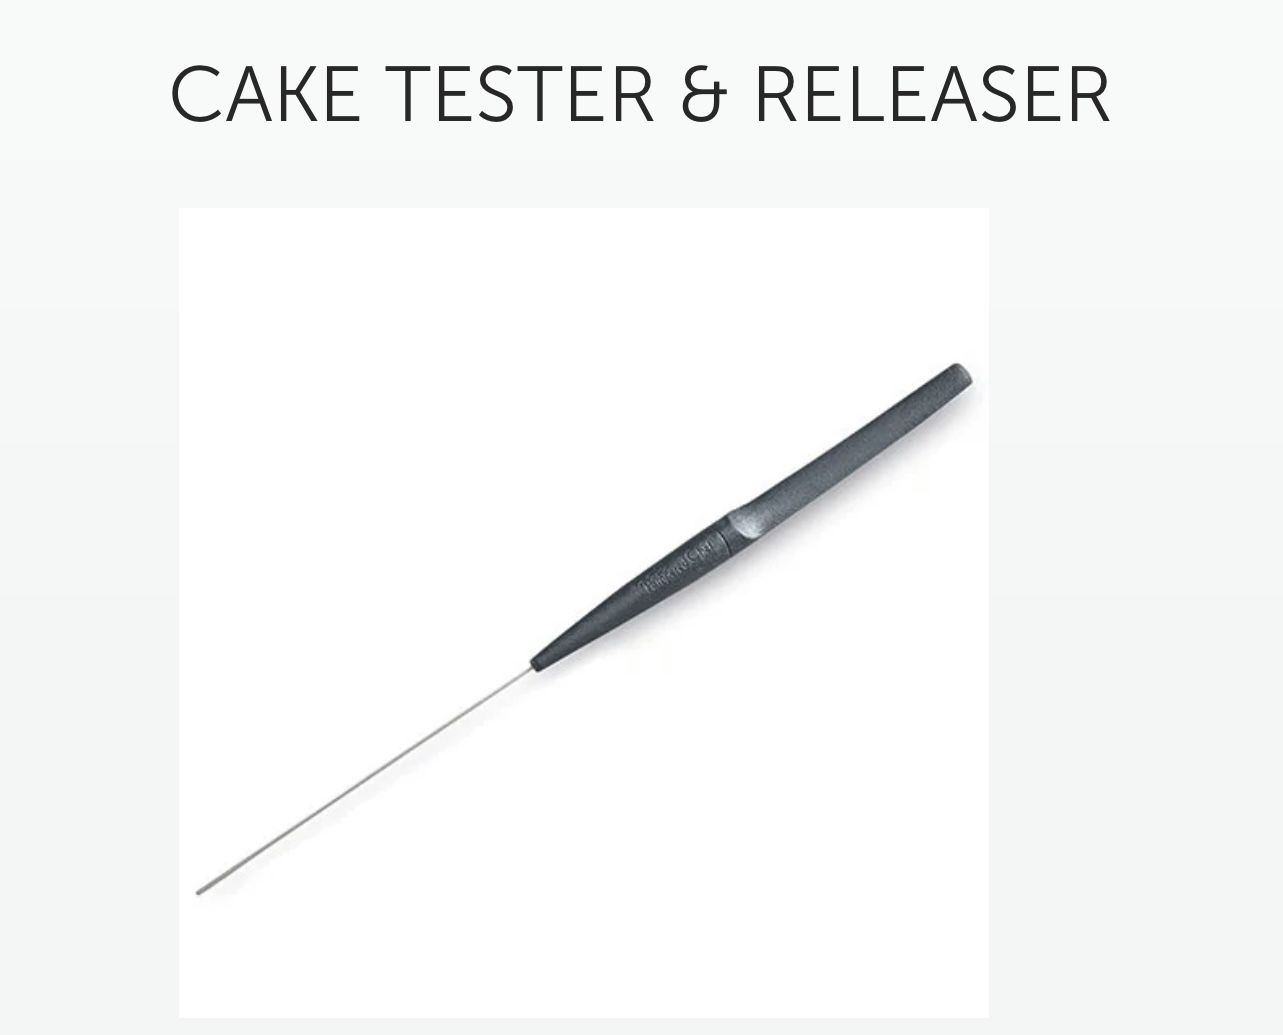 Cake Tester & Releaser